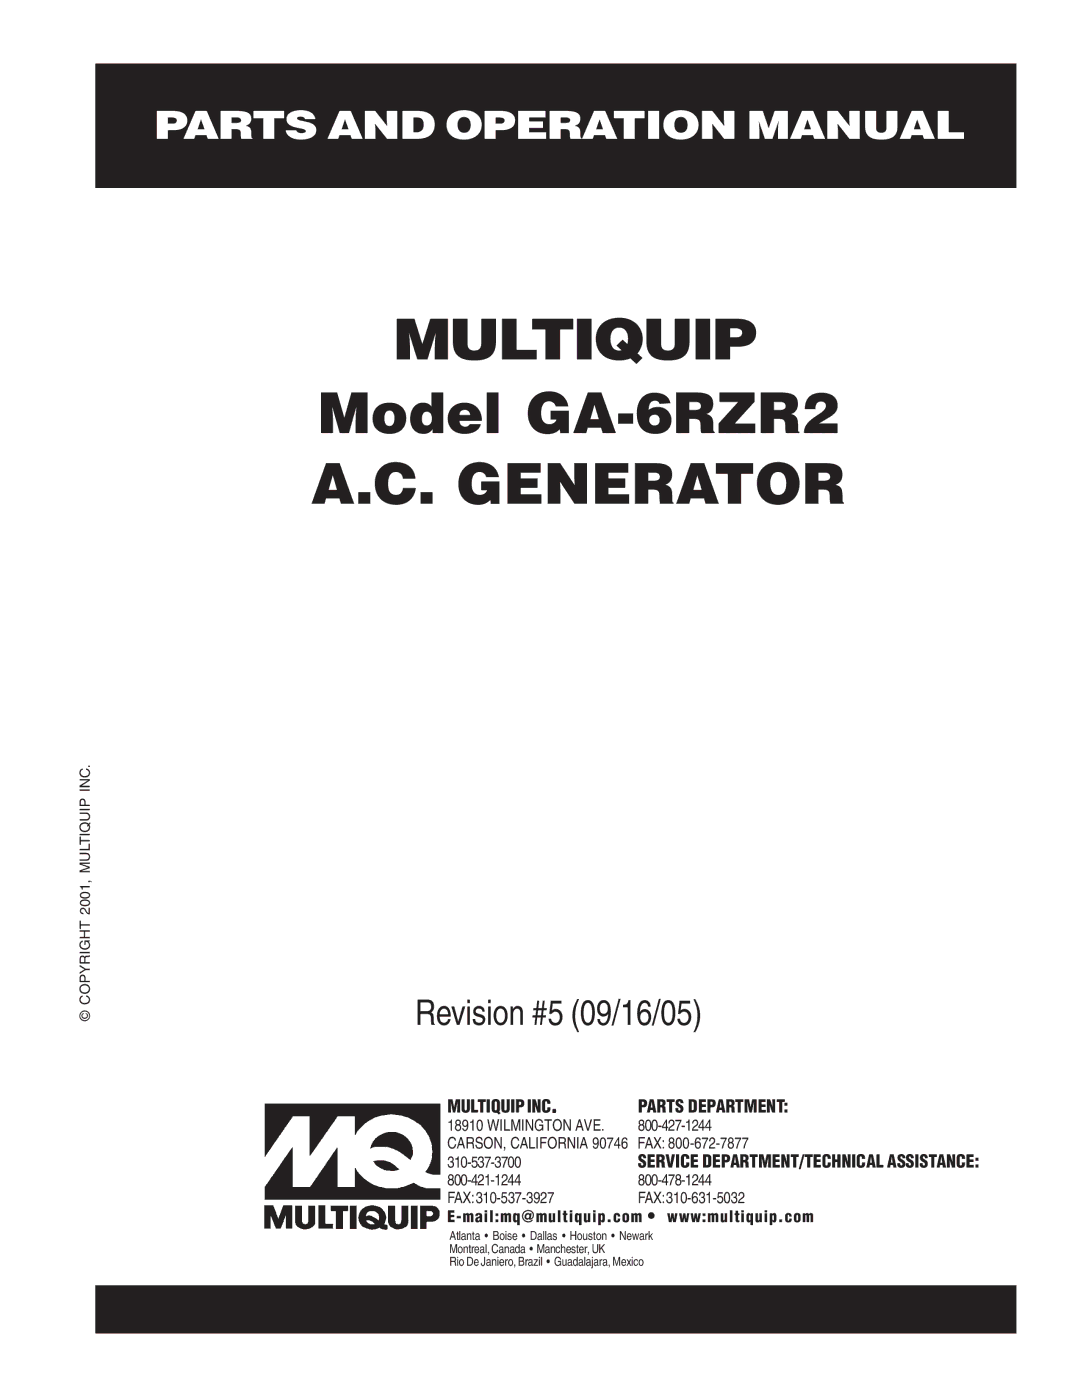 Multiquip GA-6RZR2 operation manual Multiquip 